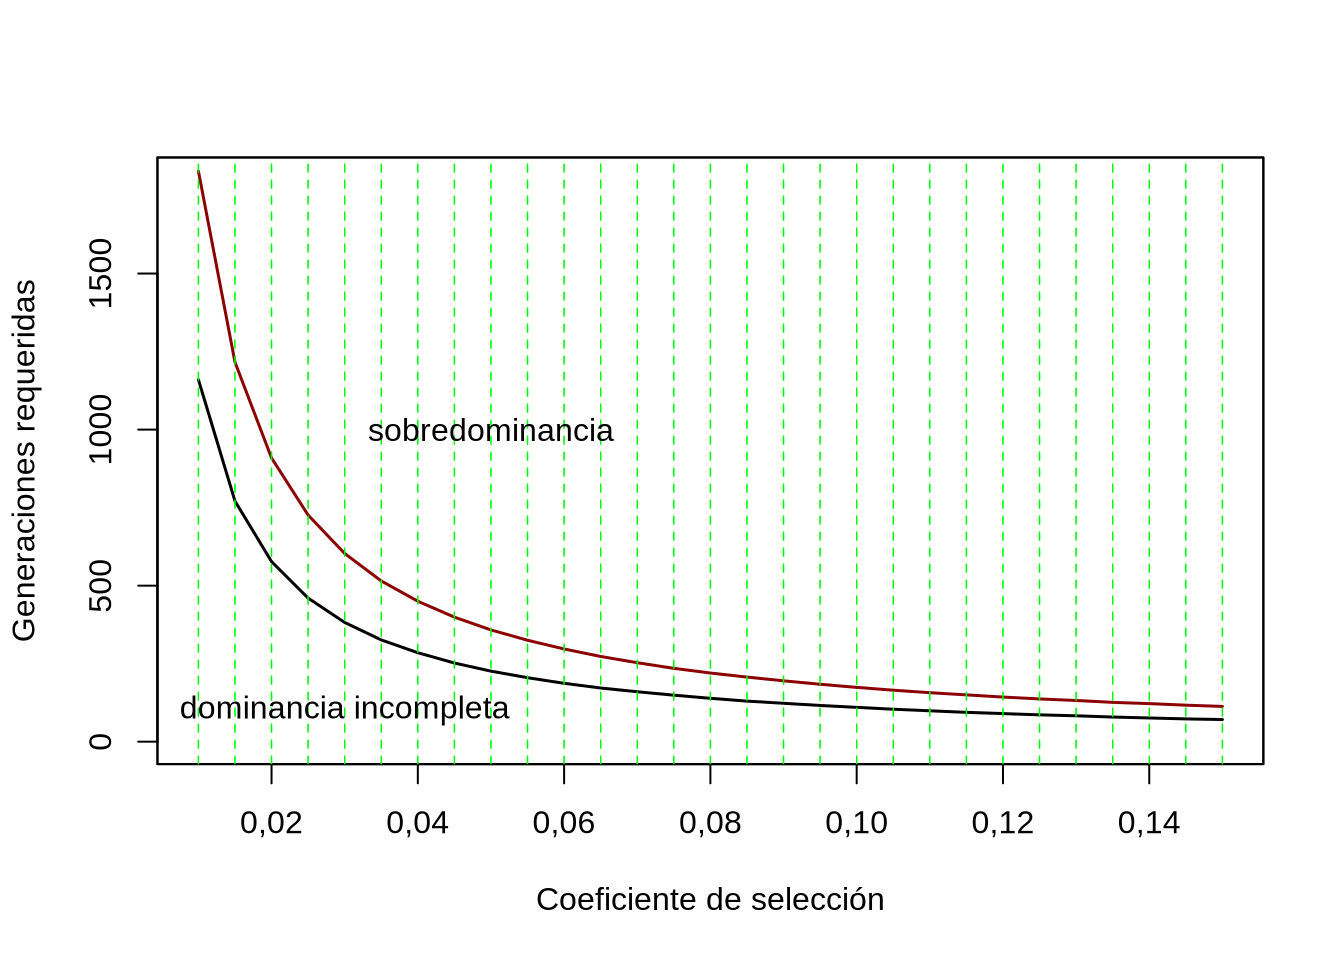 Número de generaciones requeridas para quedar a menos de \(1\%\) del punto de equilibrio bajo diferentes coeficientes de selección (entre \(s=0,01\) y \(s=0,15\), de a \(0,005\)) y en dos modos de acción génica (negro dominancia incompleta \(h=\frac{1}{2}\), rojo sobredominancia \(h=-\frac{1}{2}\)), partiendo de una frecuencia inicial \(p=0,01\). Claramente el comportamiento no es lineal y a medida de que el coeficiente de selección disminuye el número de generaciones se hace mucho mayor.